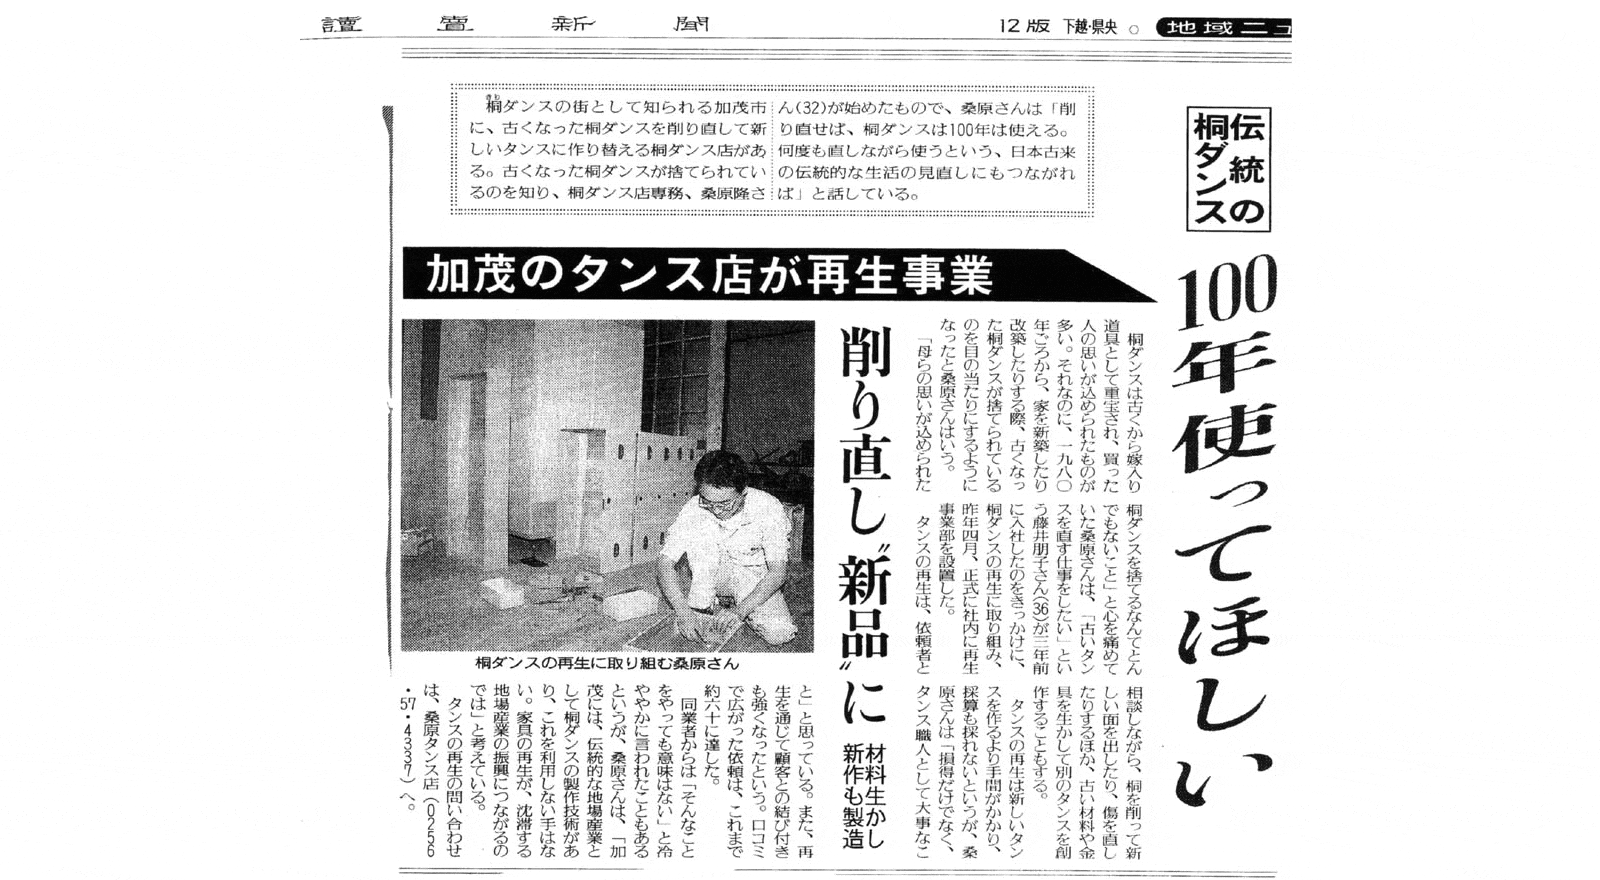 2000年11月19日 読売新聞取材